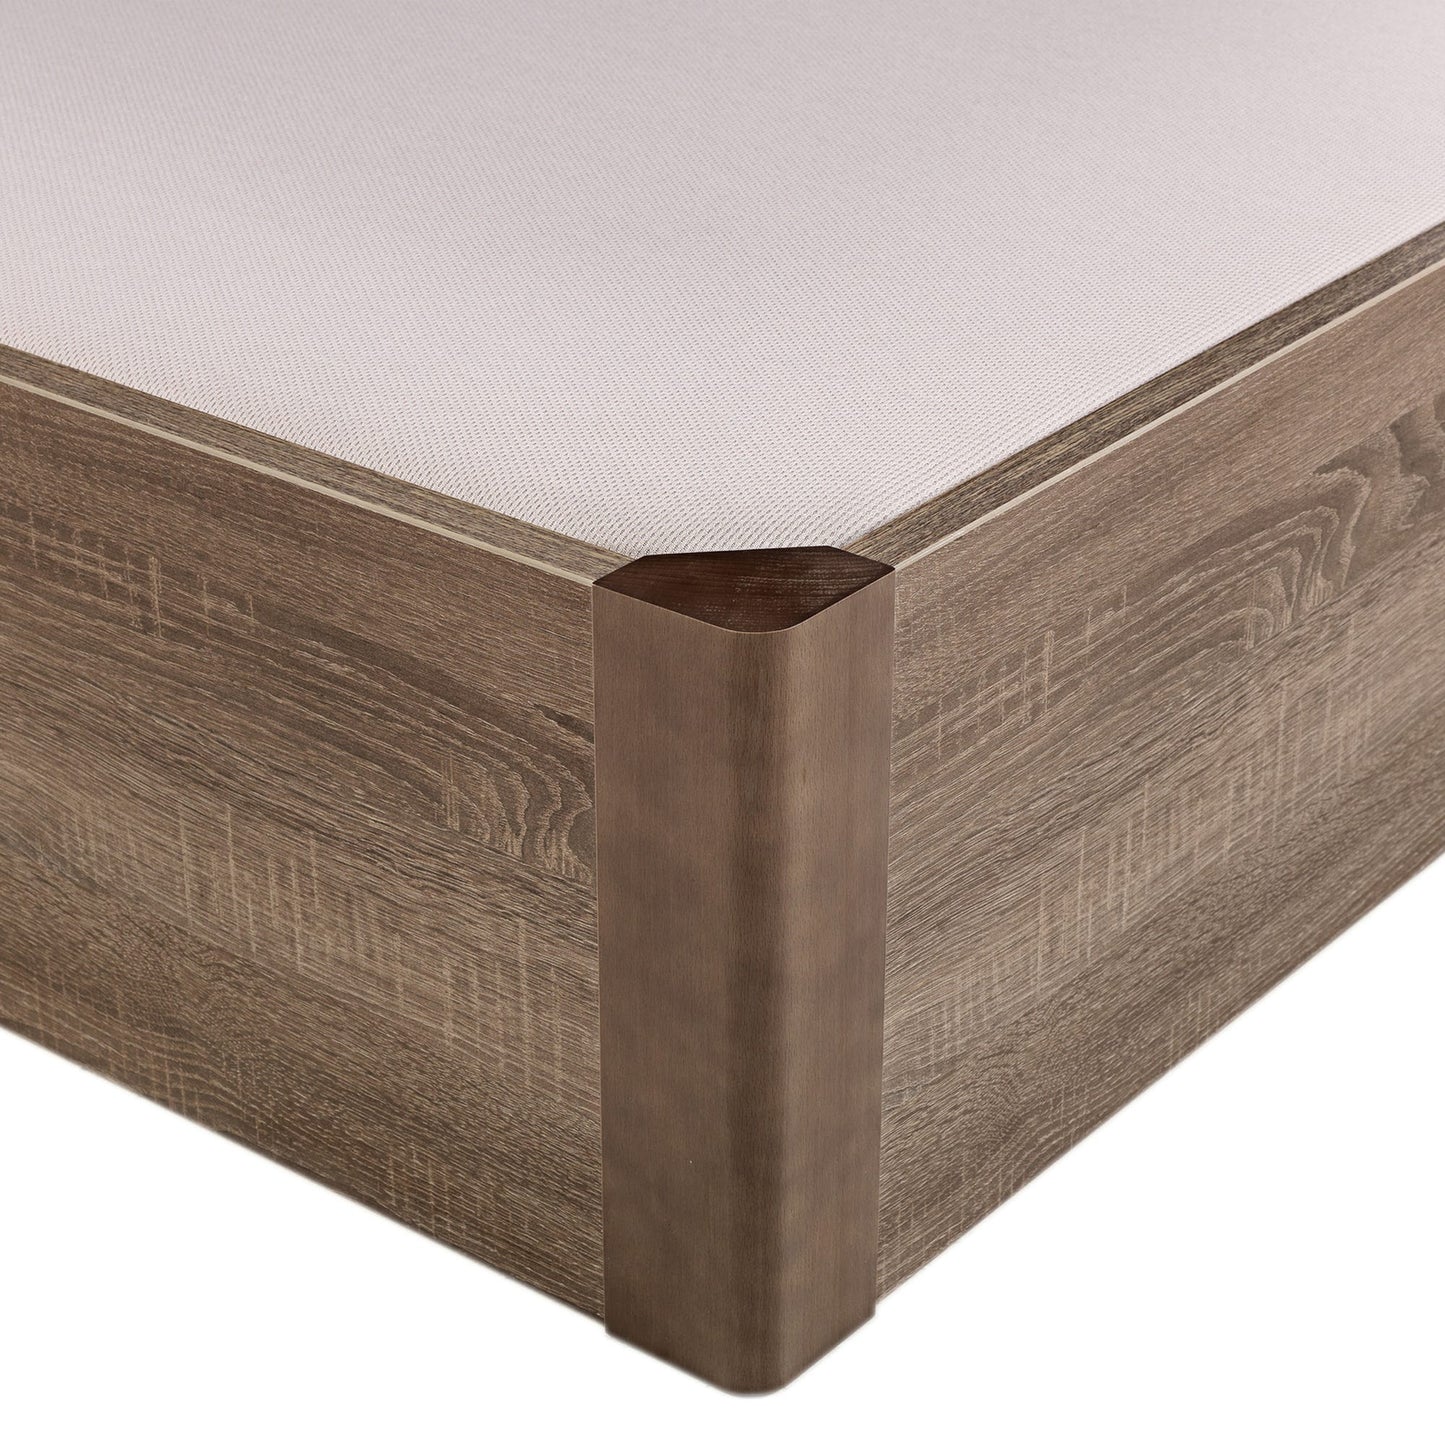 Canapé abatible de madera tapa única de color roble - DESIGN - 135x182